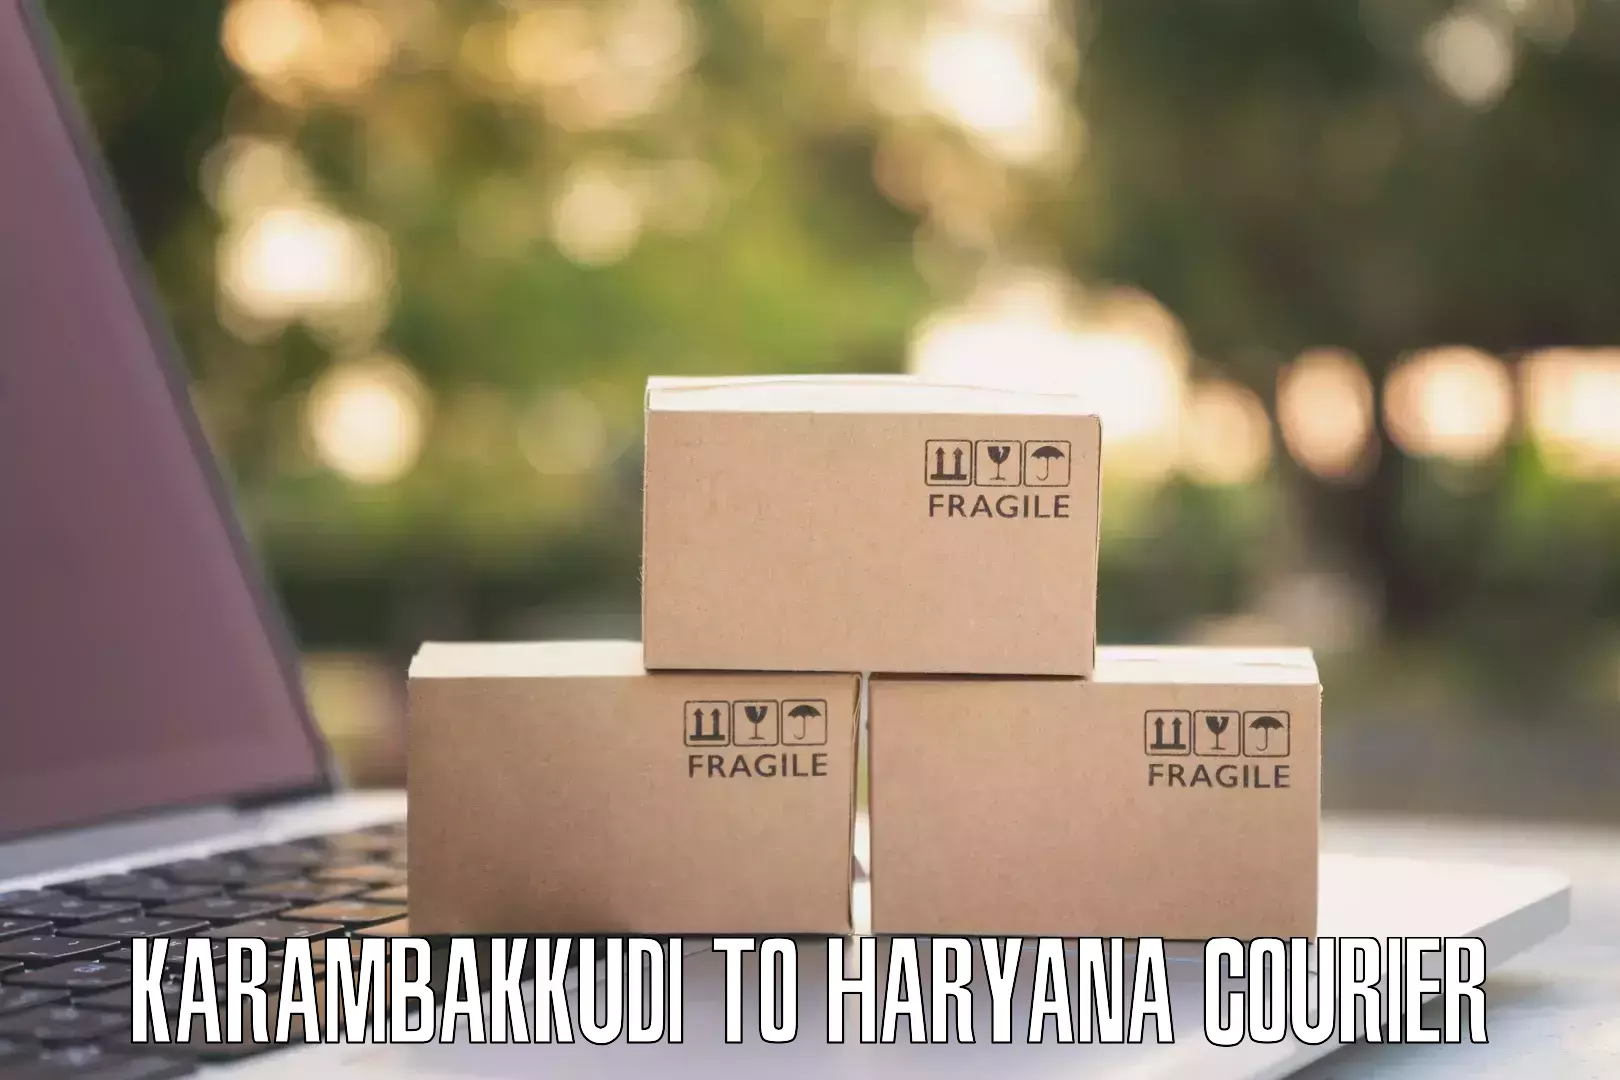 Quality courier partnerships Karambakkudi to Dharuhera